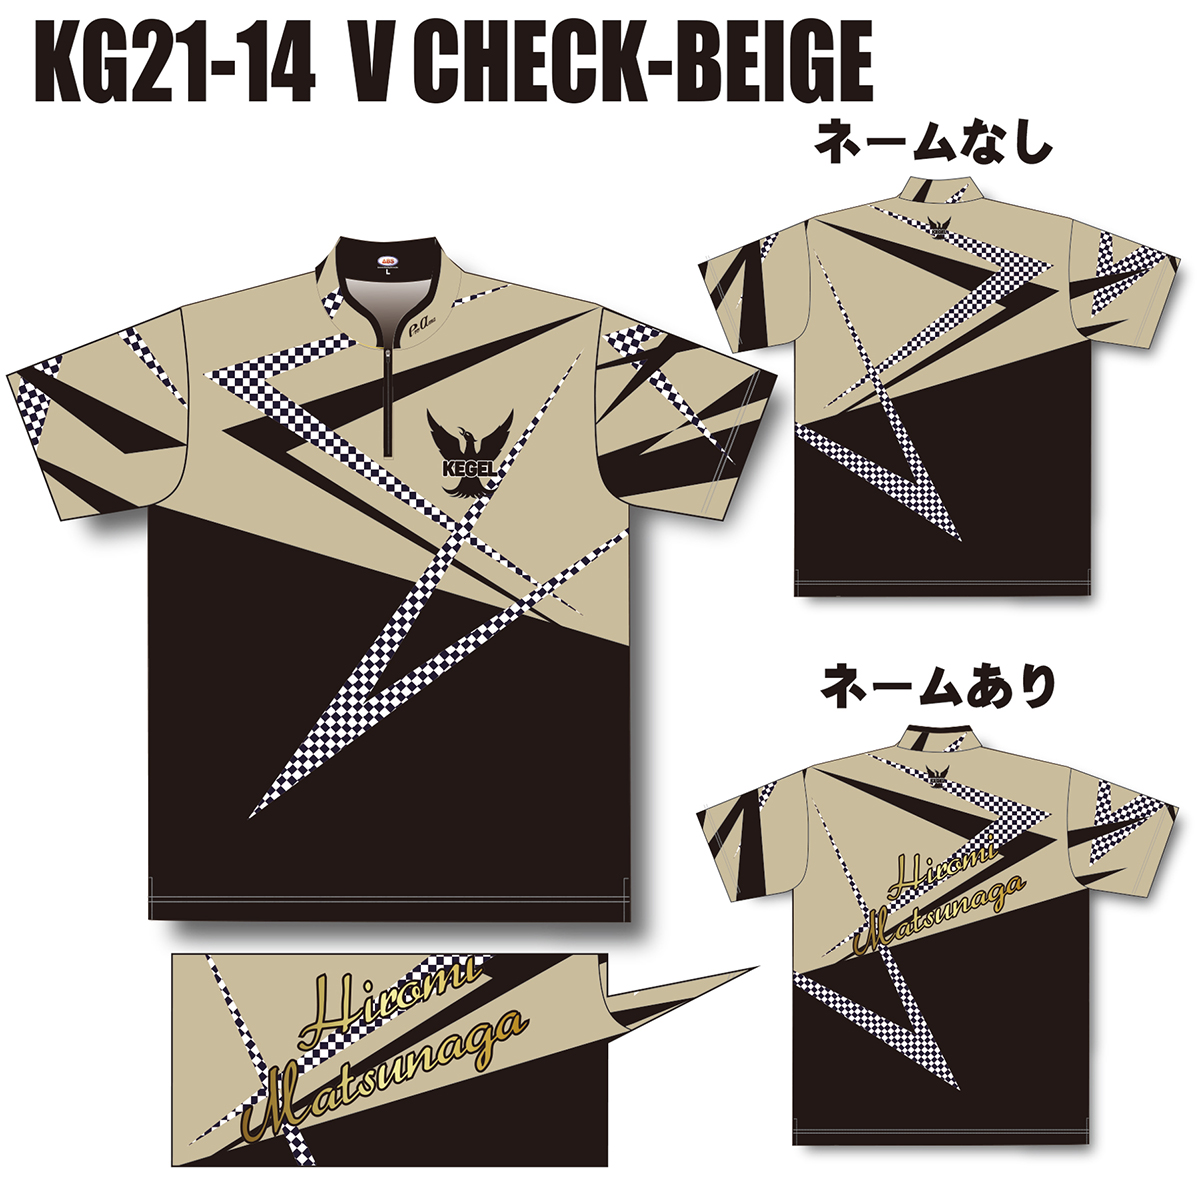 KEGEL KG21-14(V CHECK-BEIGE)